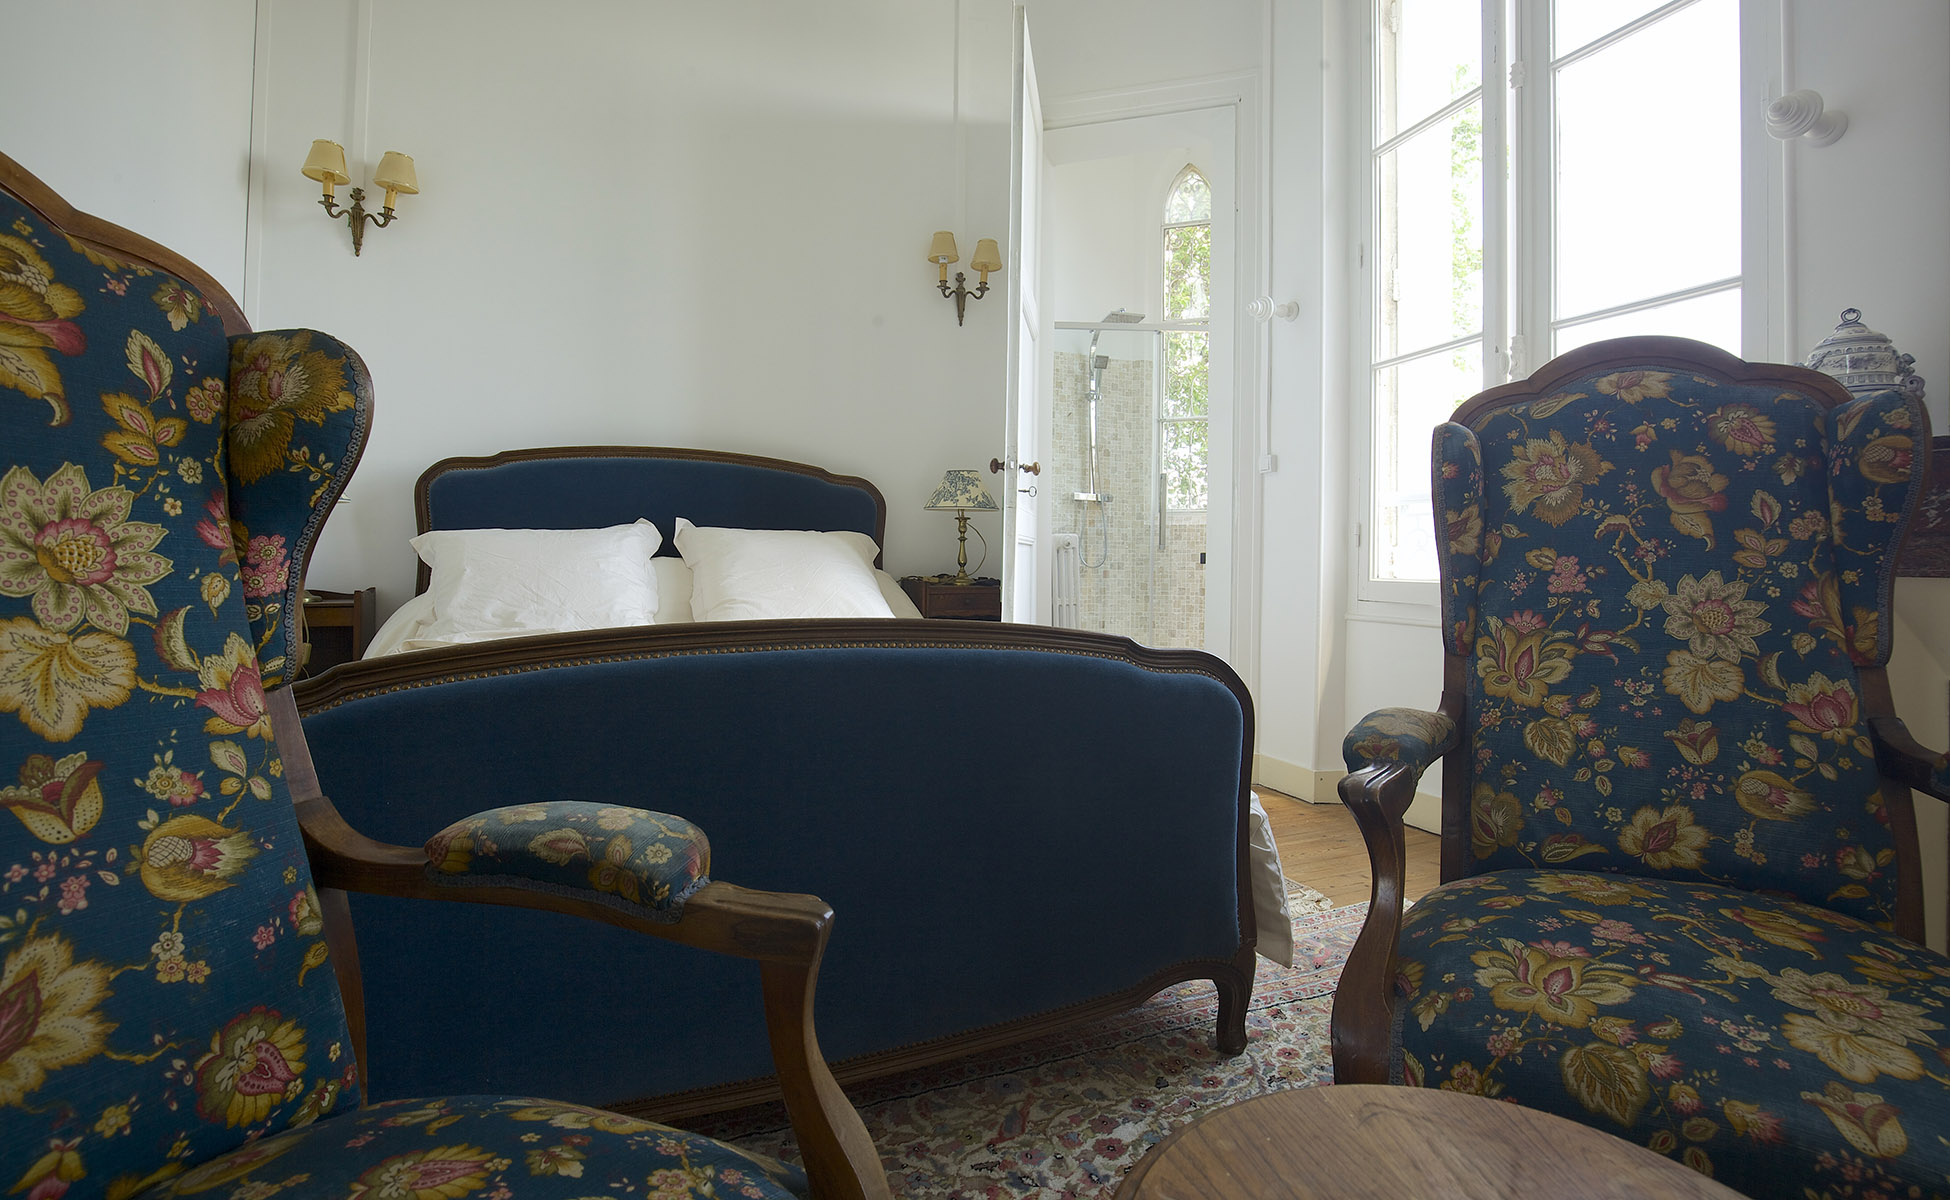 Lovelydays luxury service apartment rental - Libourne - Chateau de JUNAYME - Lovelysuite - 7 bedrooms - 6 bathrooms - King bed - afd38614514c - Lovelydays